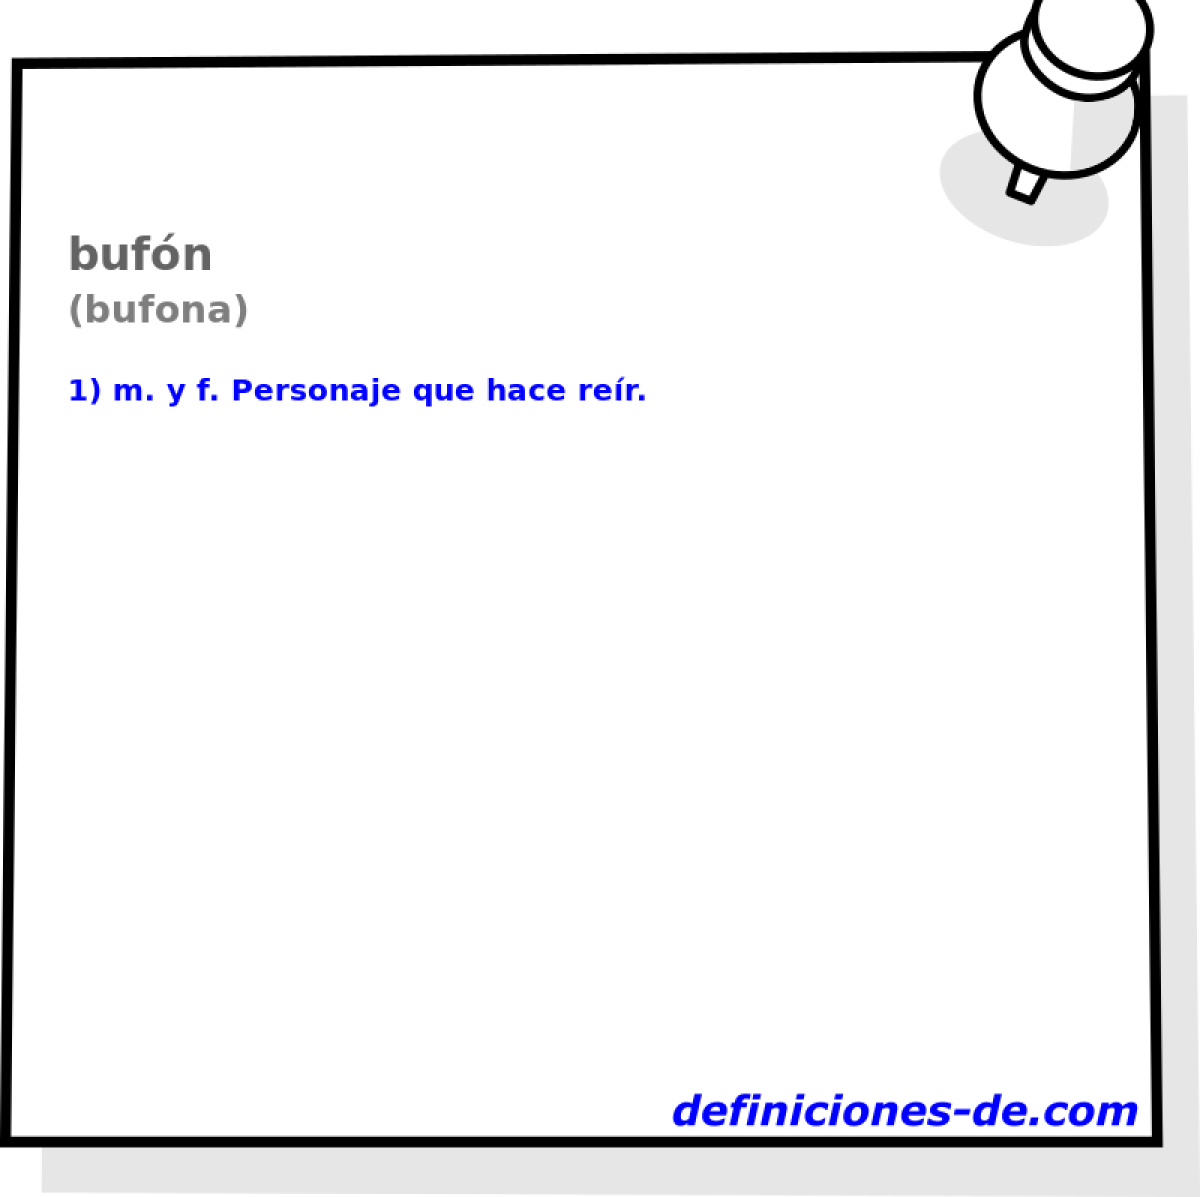 bufn (bufona)